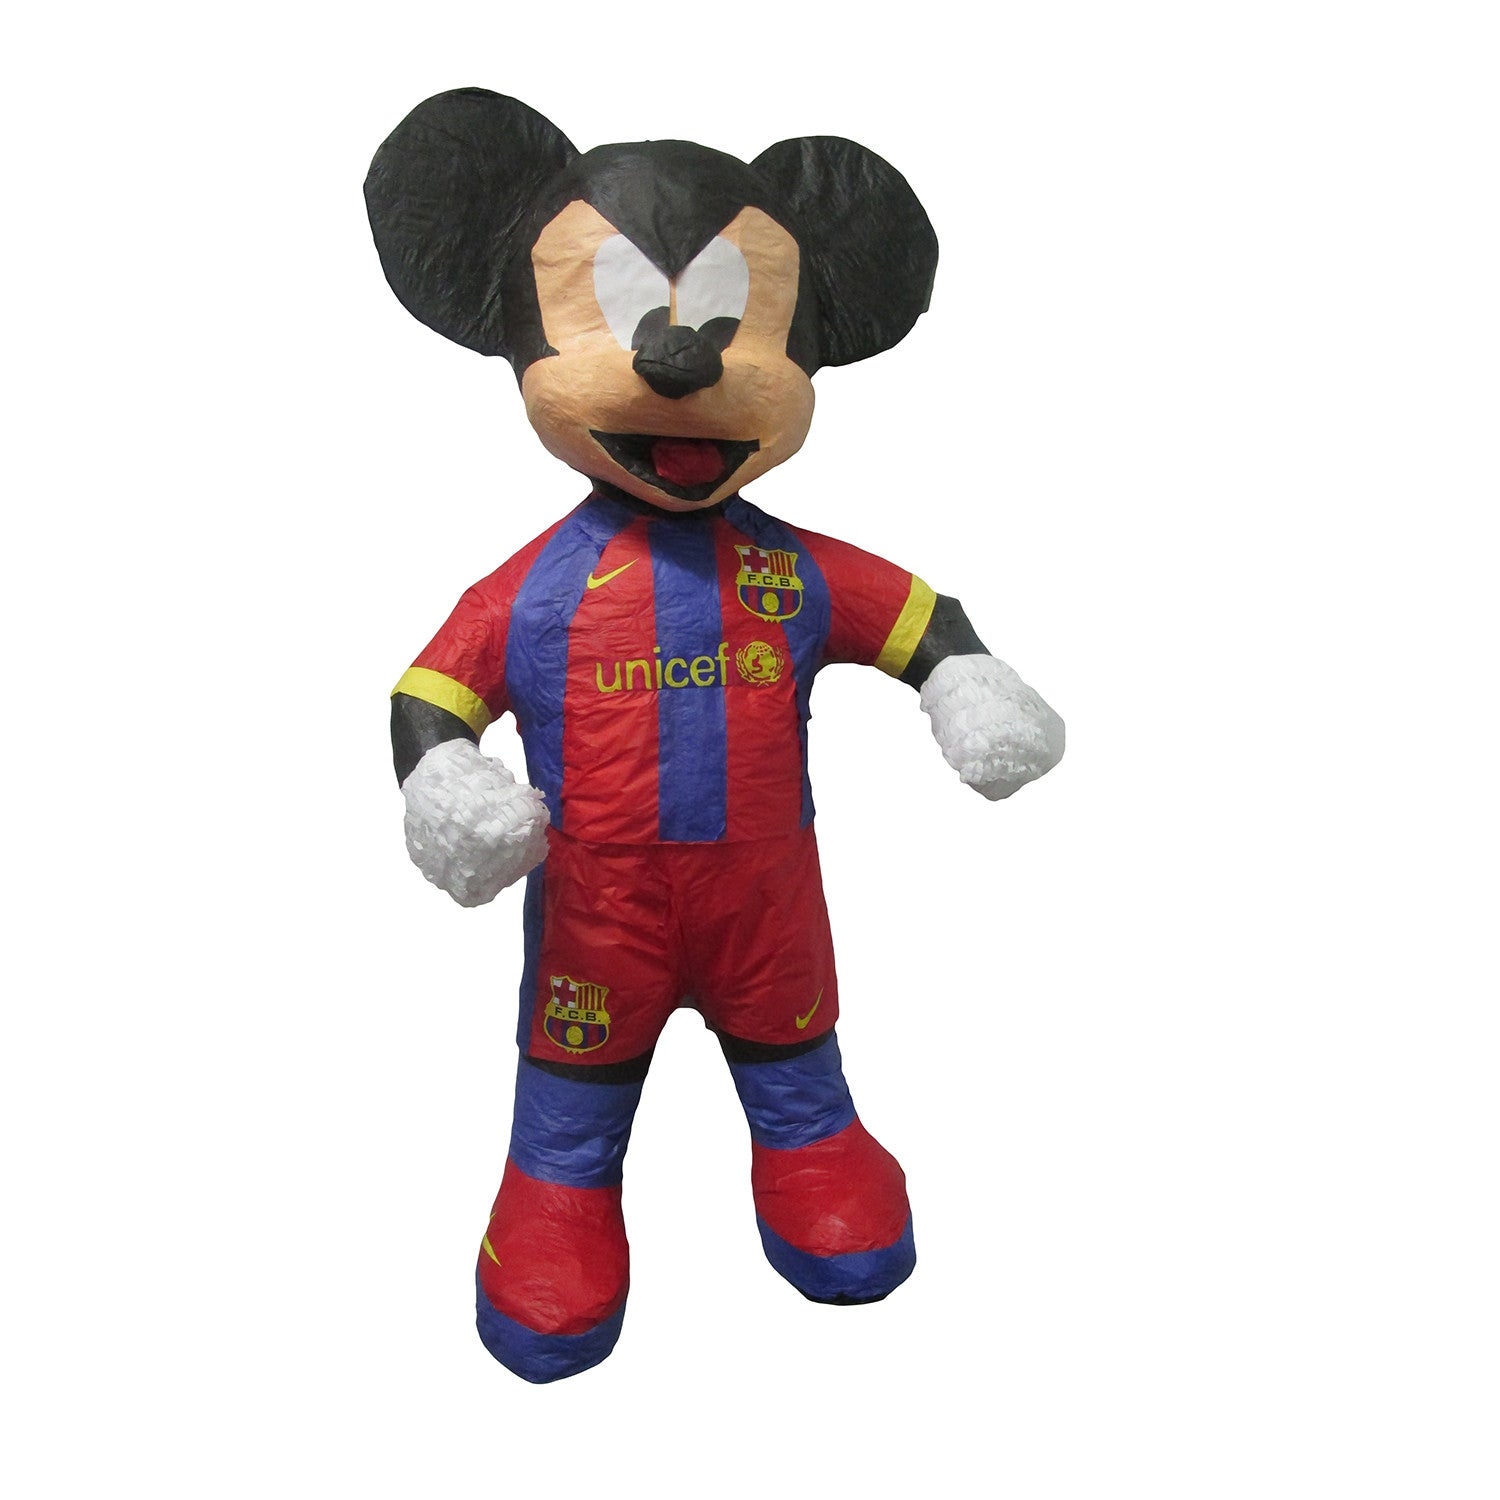 Mickey Mouse Football Custom Pinata